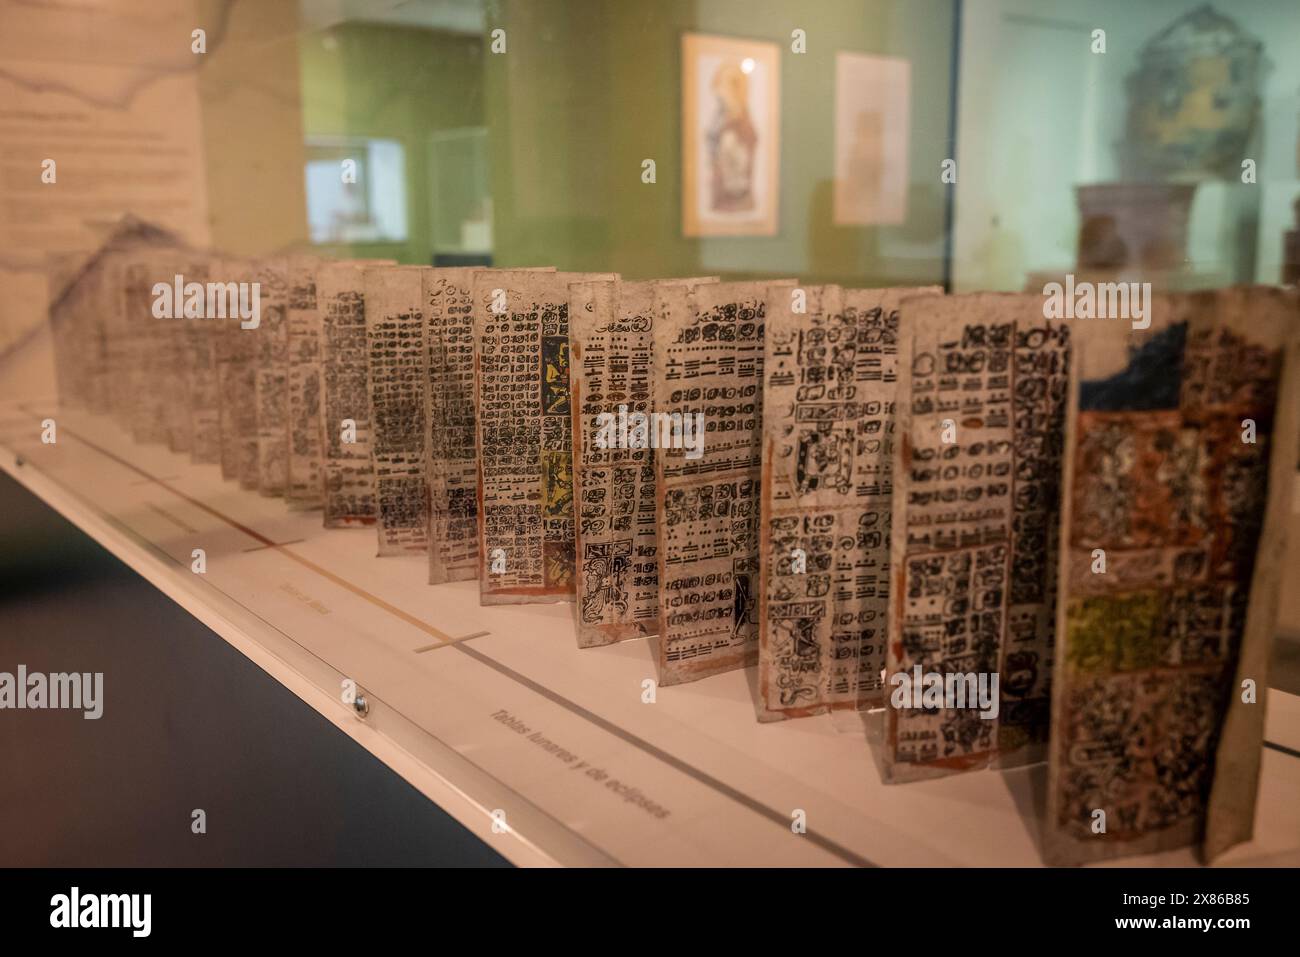 Riproduzione del codice di Dresda, libro maya sulla corteccia, Museo Popol Vuh, sede di una delle più importanti collezioni di arte Maya e pre-colombiana del mondo, G. Foto Stock